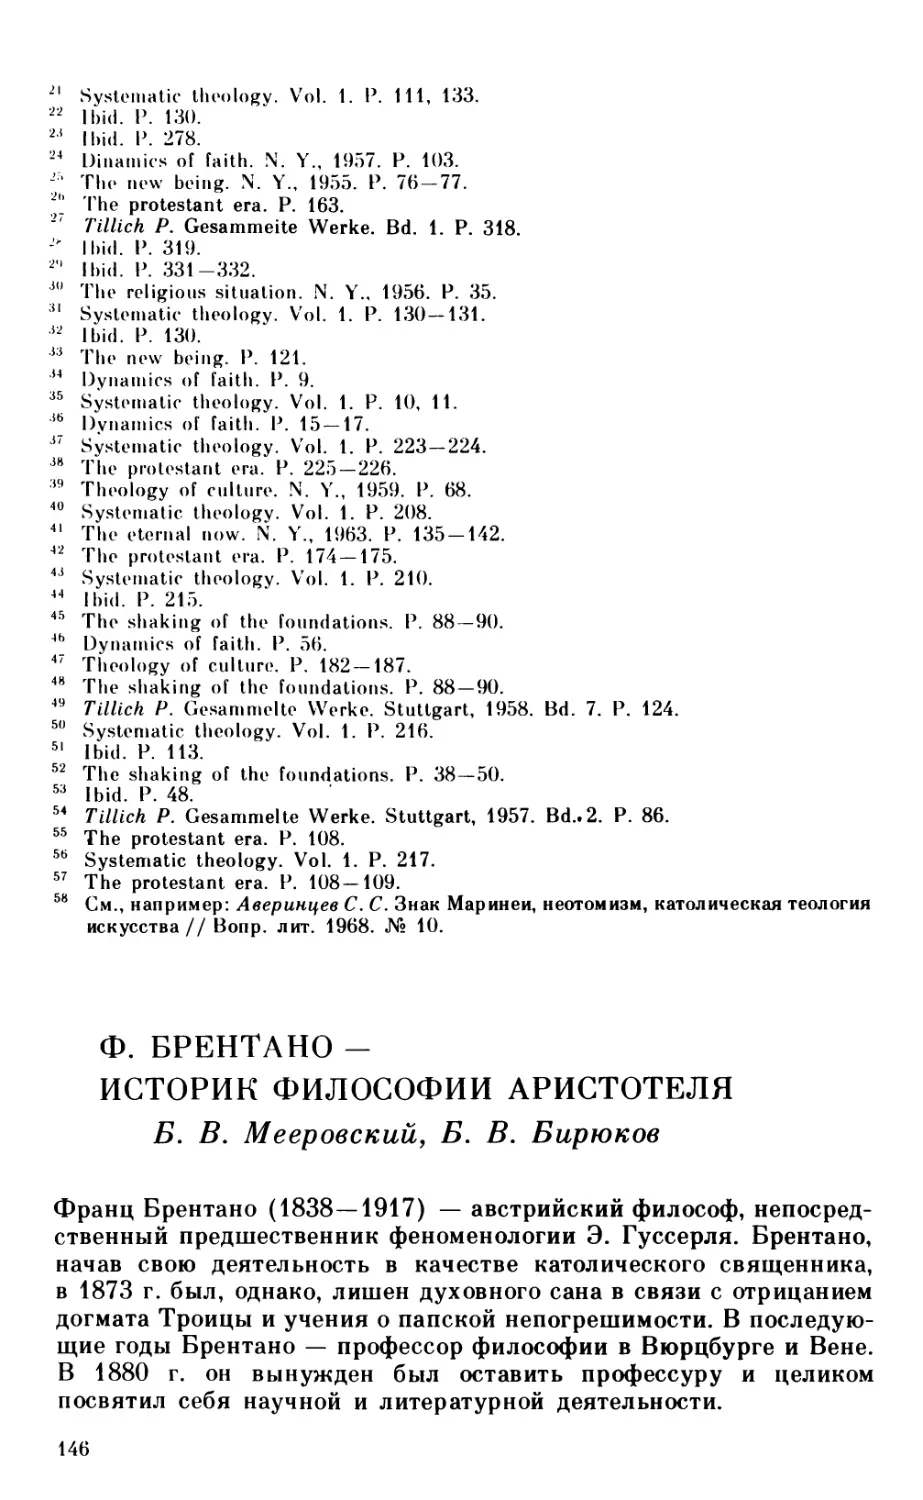 Мееровский Б. В., Бирюков Б. В.Ф. Брентано - историк философии Аристотеля